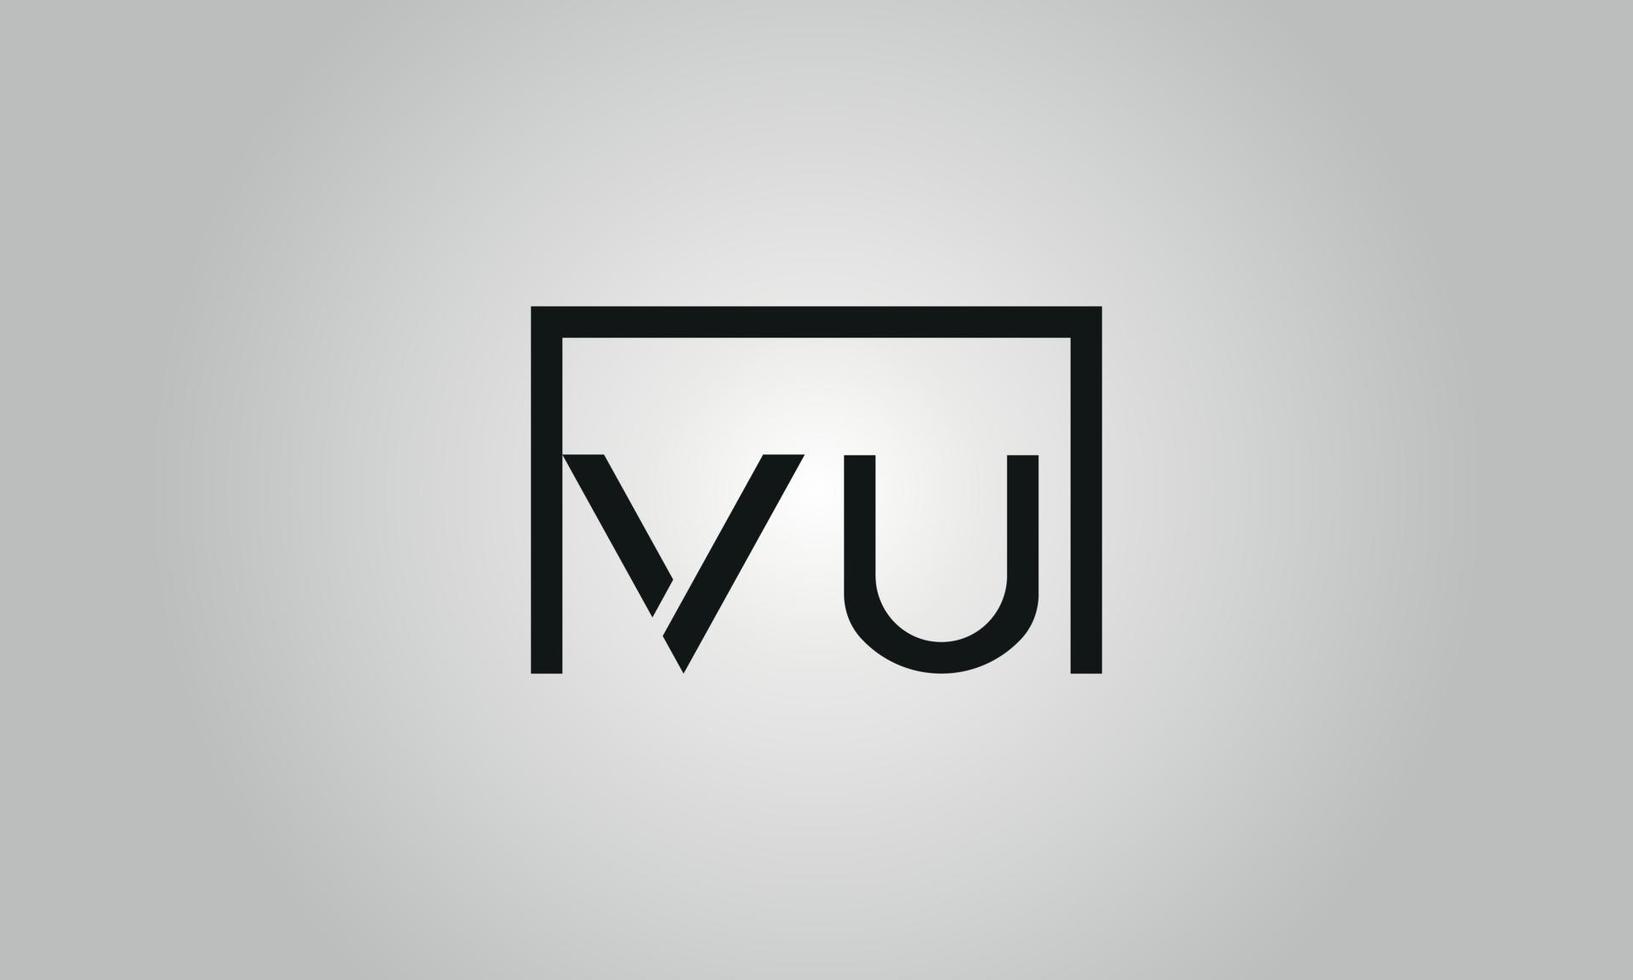 brief vu logo ontwerp. vu logo met plein vorm in zwart kleuren vector vrij vector sjabloon.